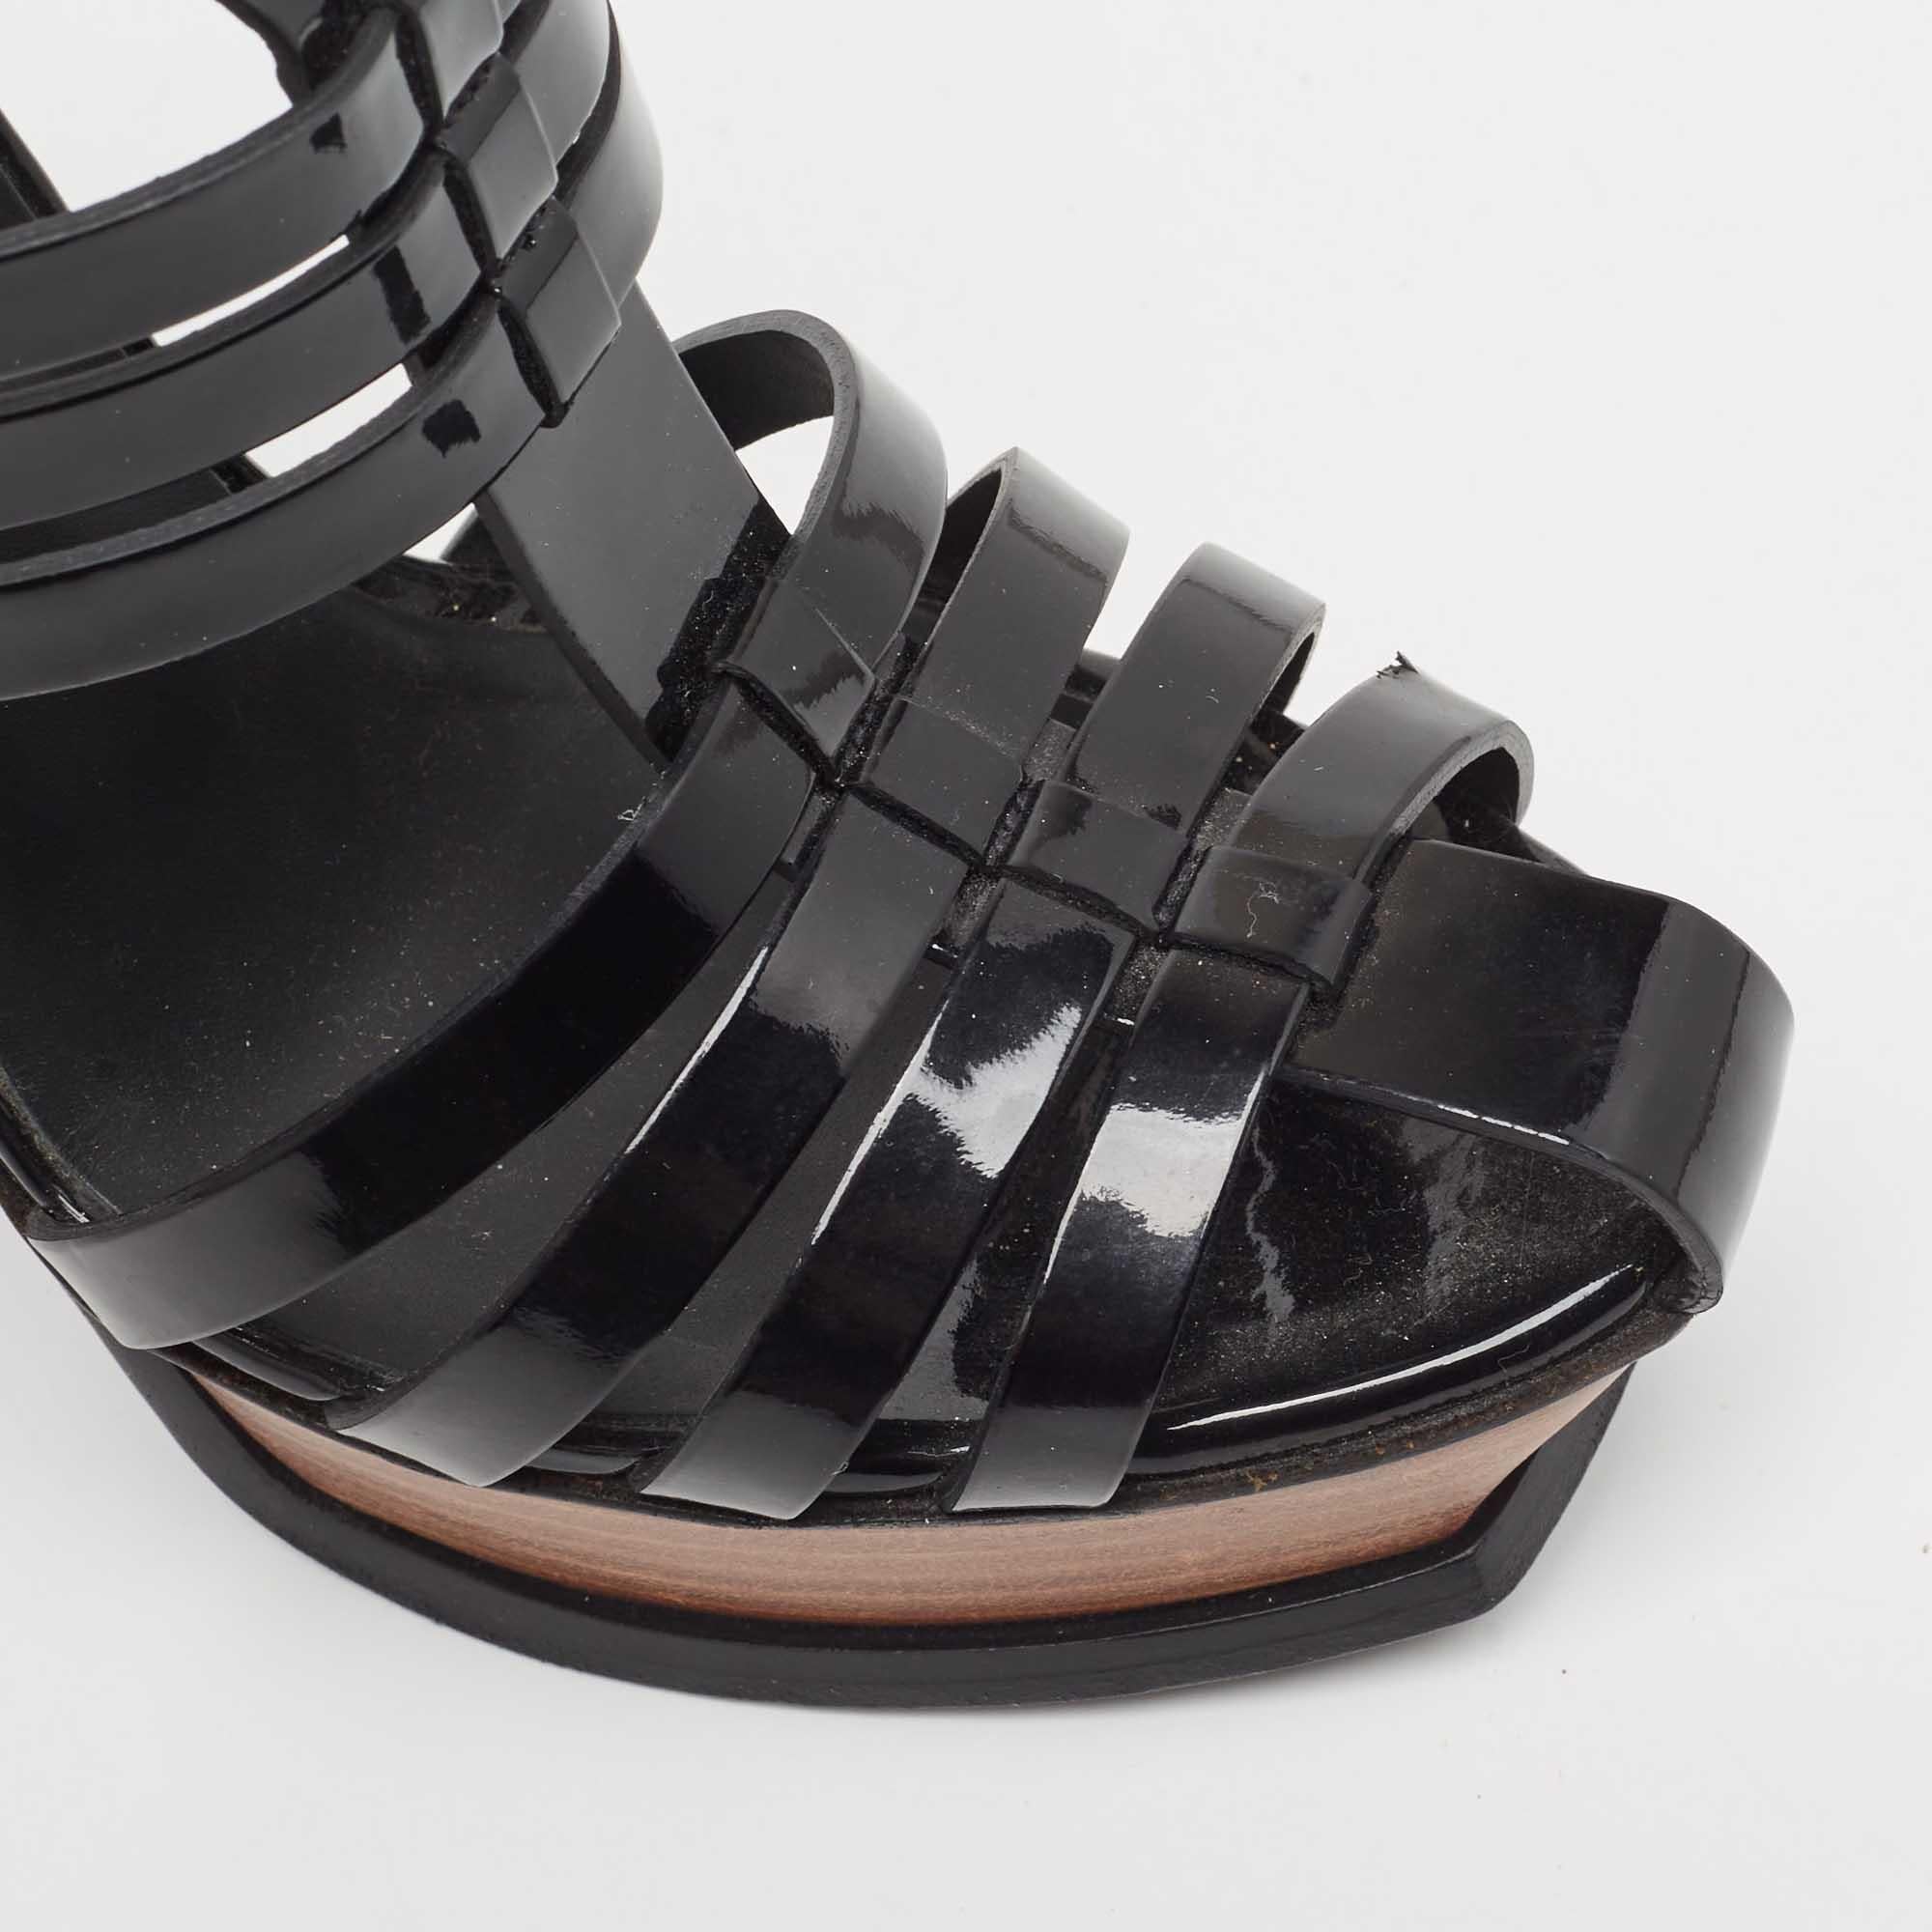 Yves Saint Laurent Black Patent Tribute Ankle Strap Sandals Size 39 1